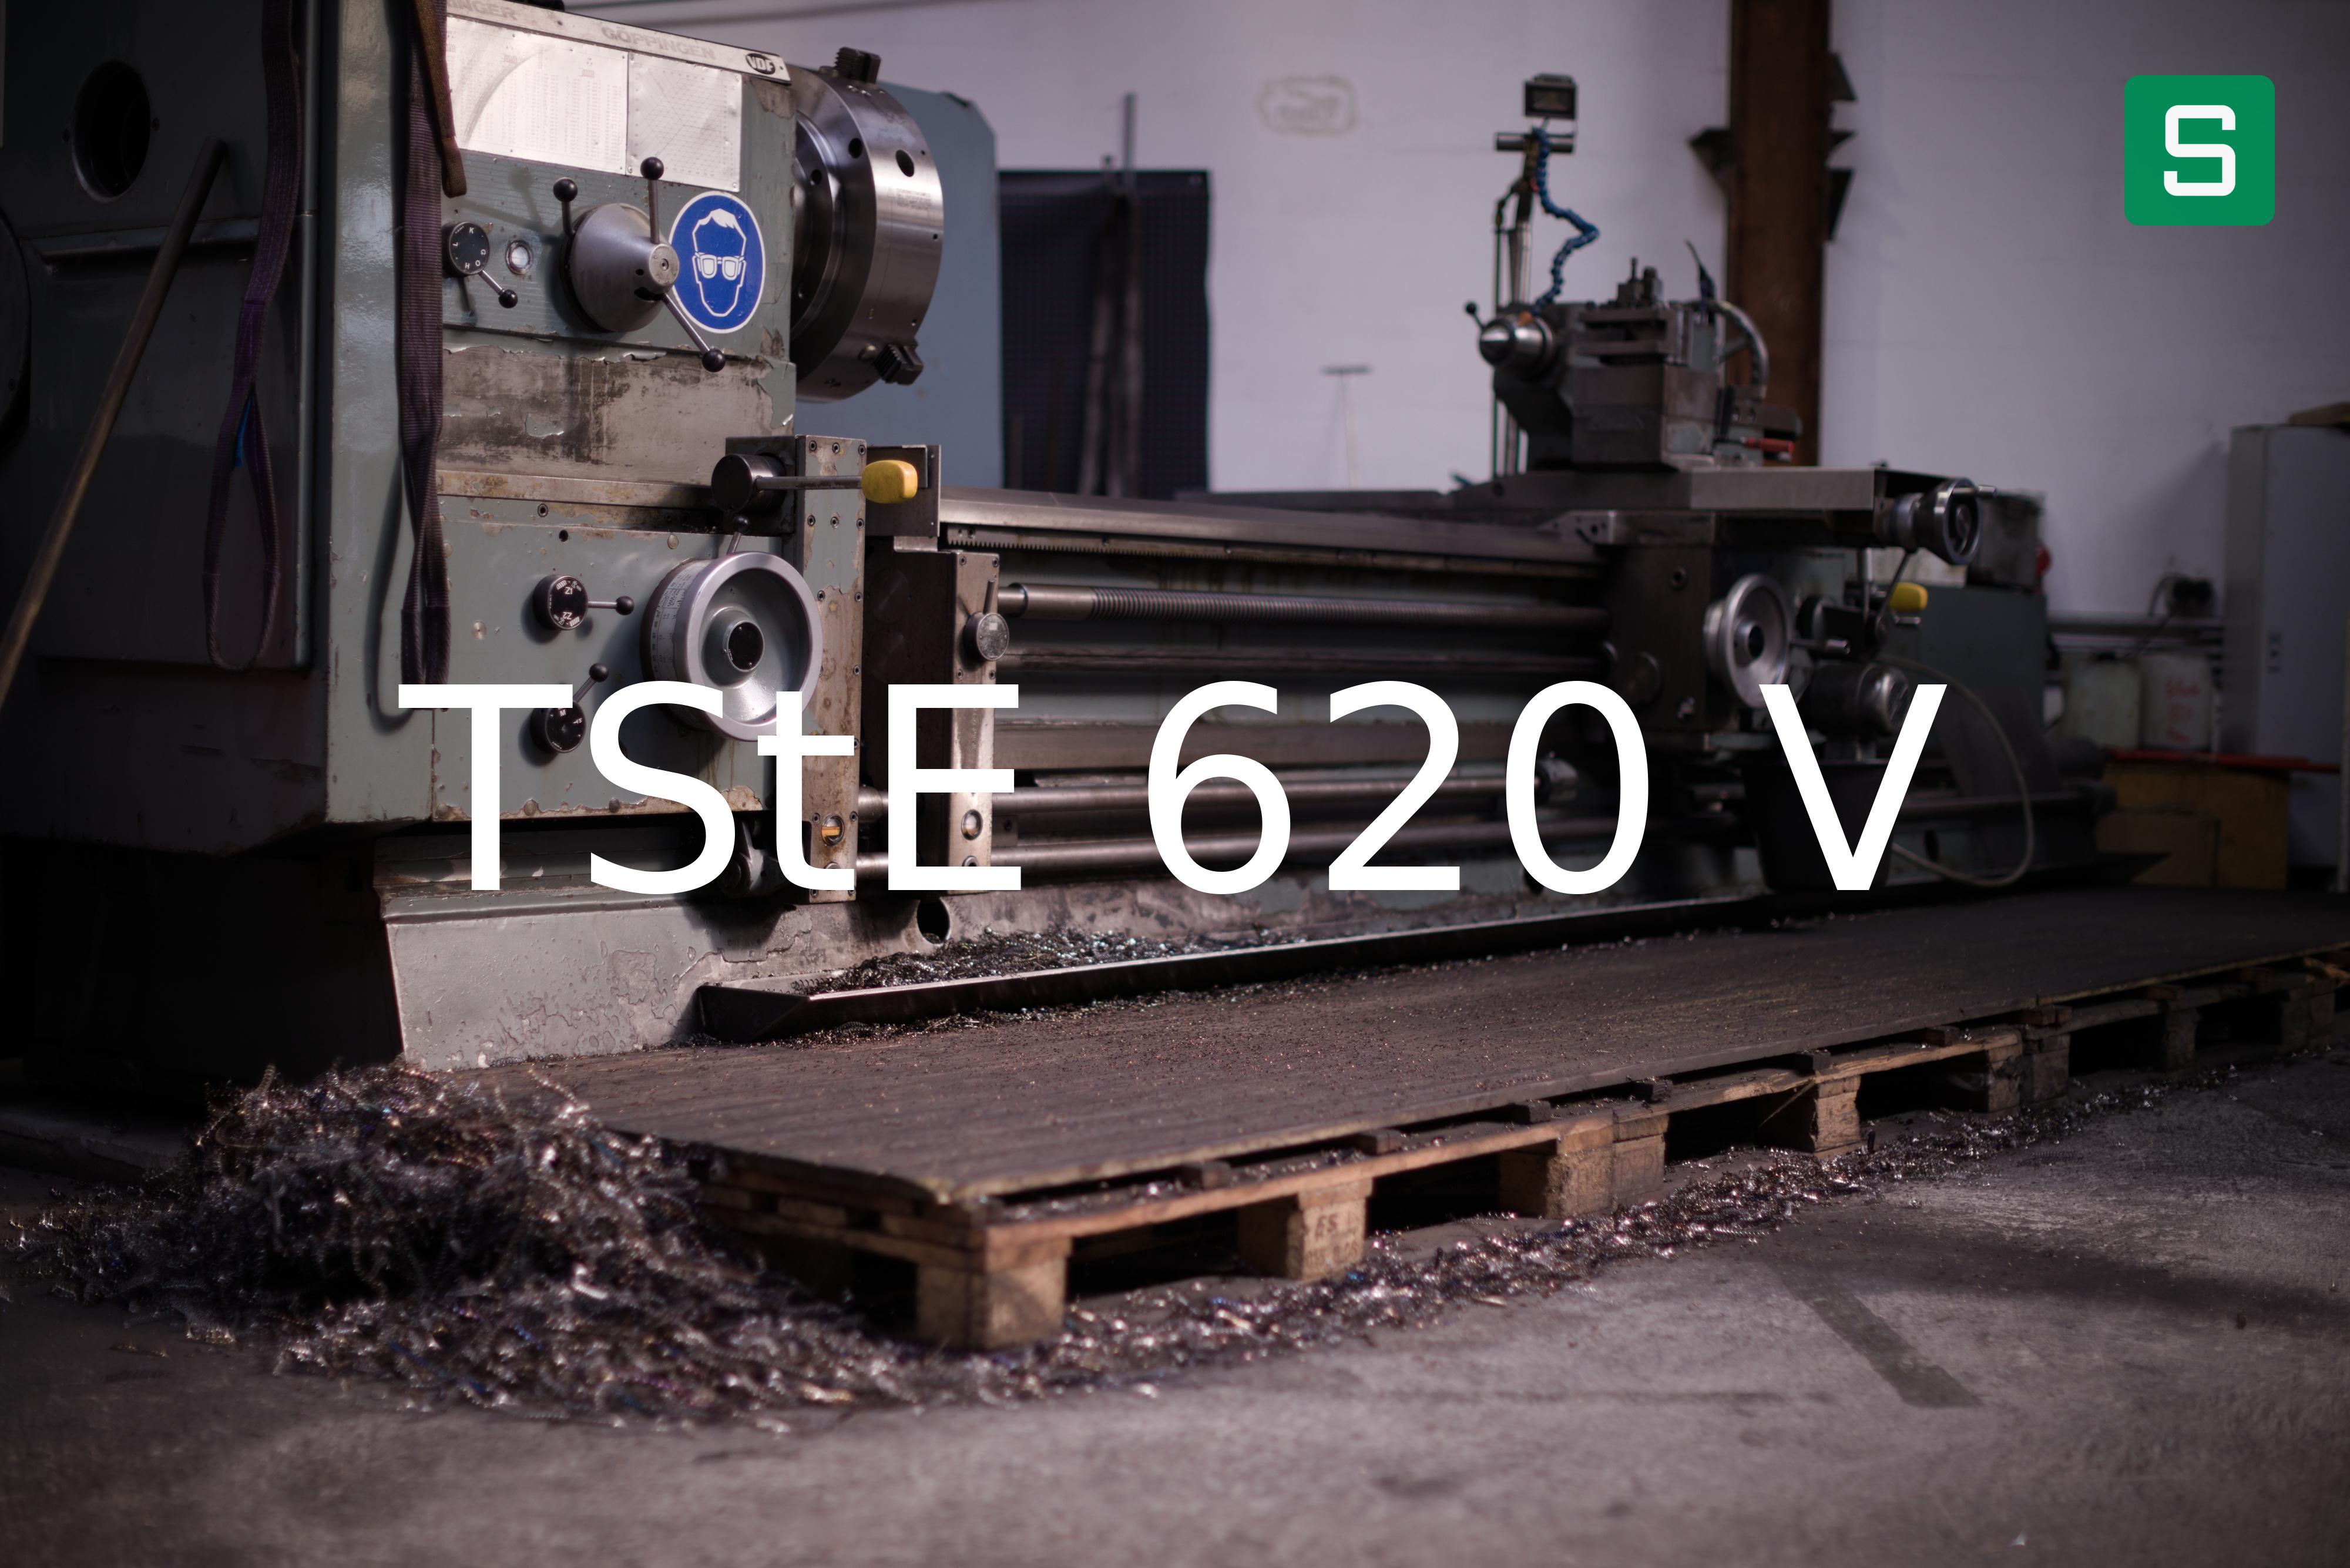 Steel Material: TStE 620 V